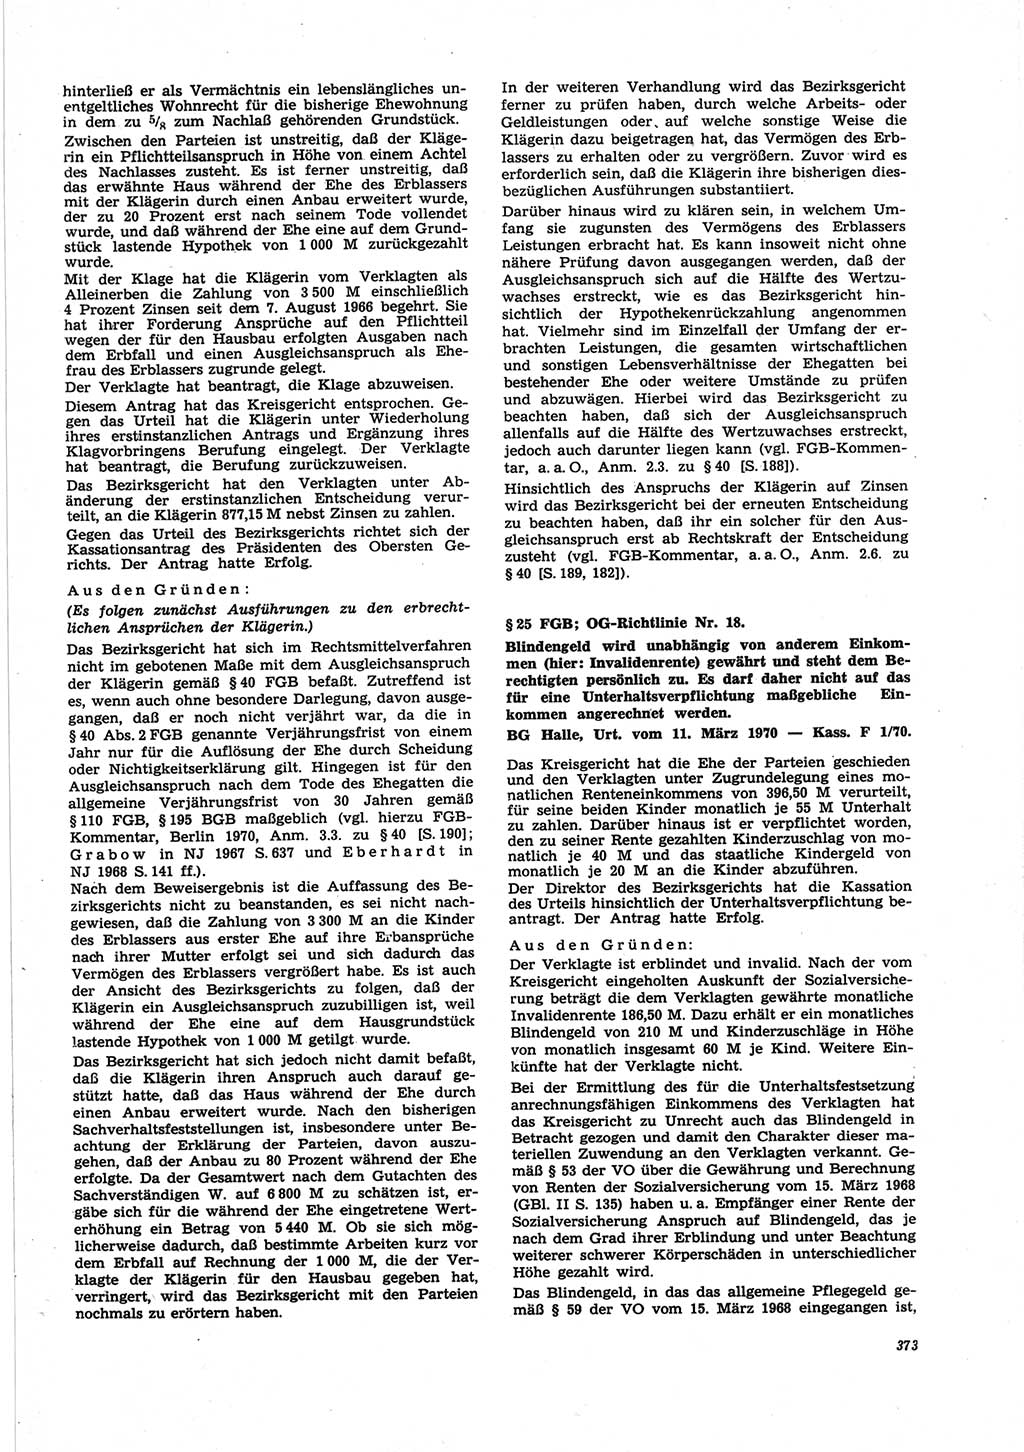 Neue Justiz (NJ), Zeitschrift für Recht und Rechtswissenschaft [Deutsche Demokratische Republik (DDR)], 25. Jahrgang 1971, Seite 373 (NJ DDR 1971, S. 373)